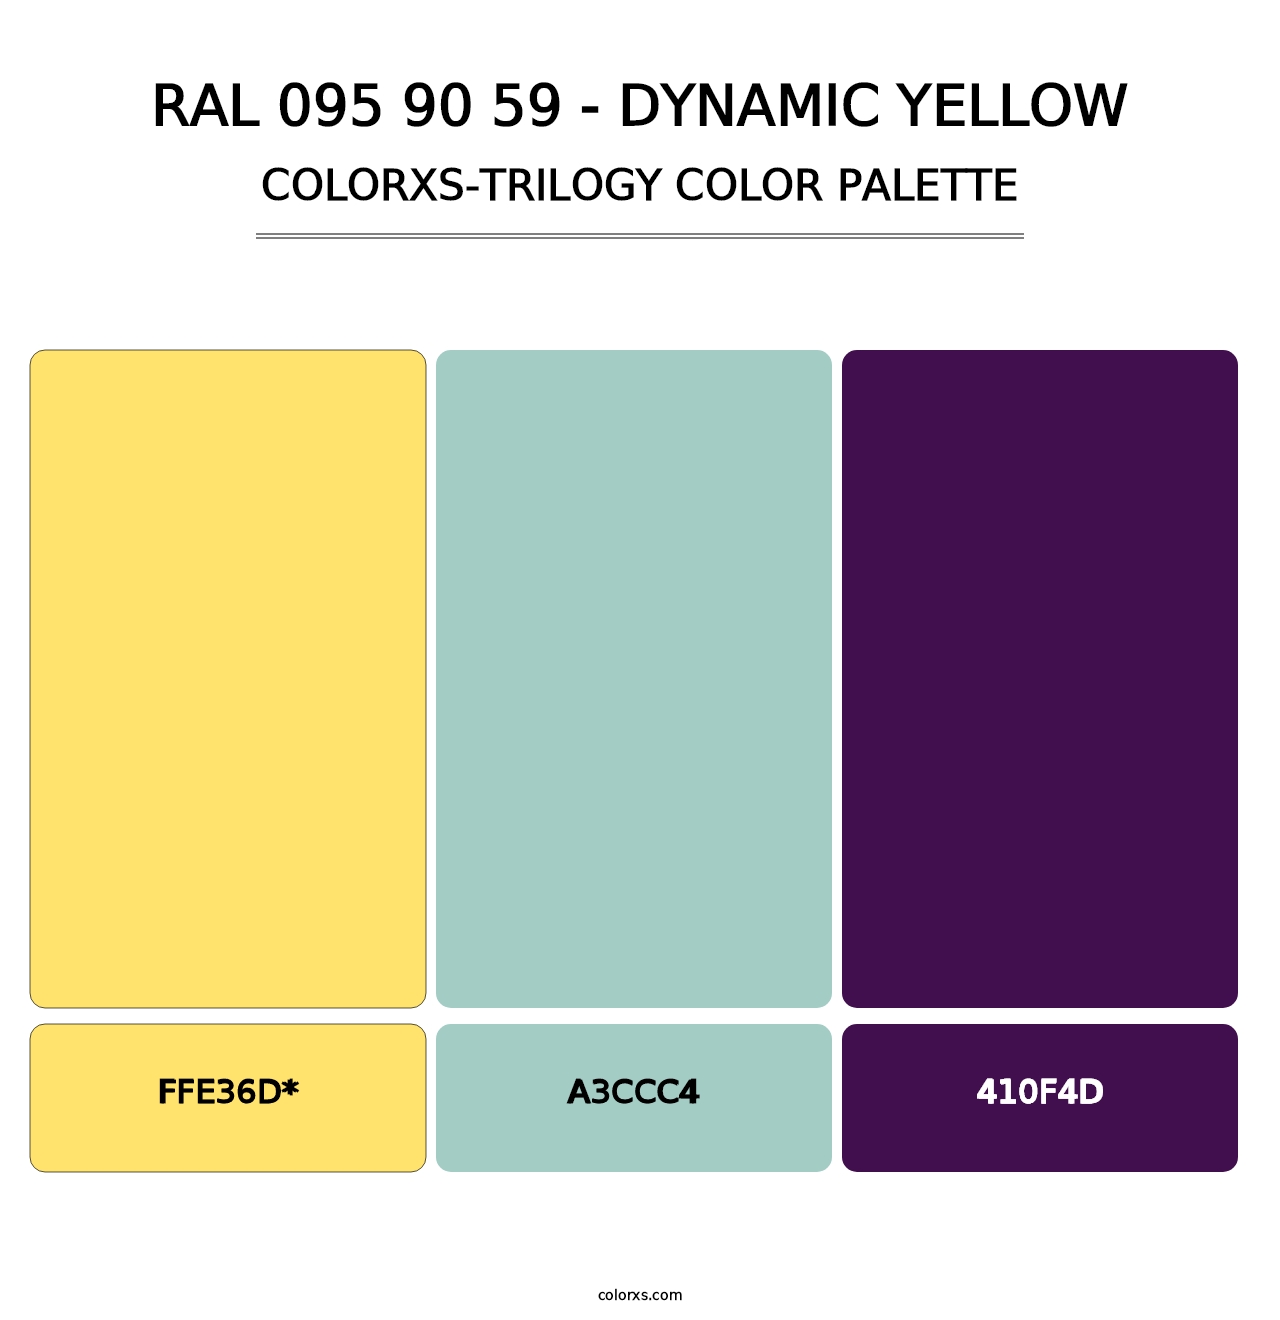 RAL 095 90 59 - Dynamic Yellow - Colorxs Trilogy Palette